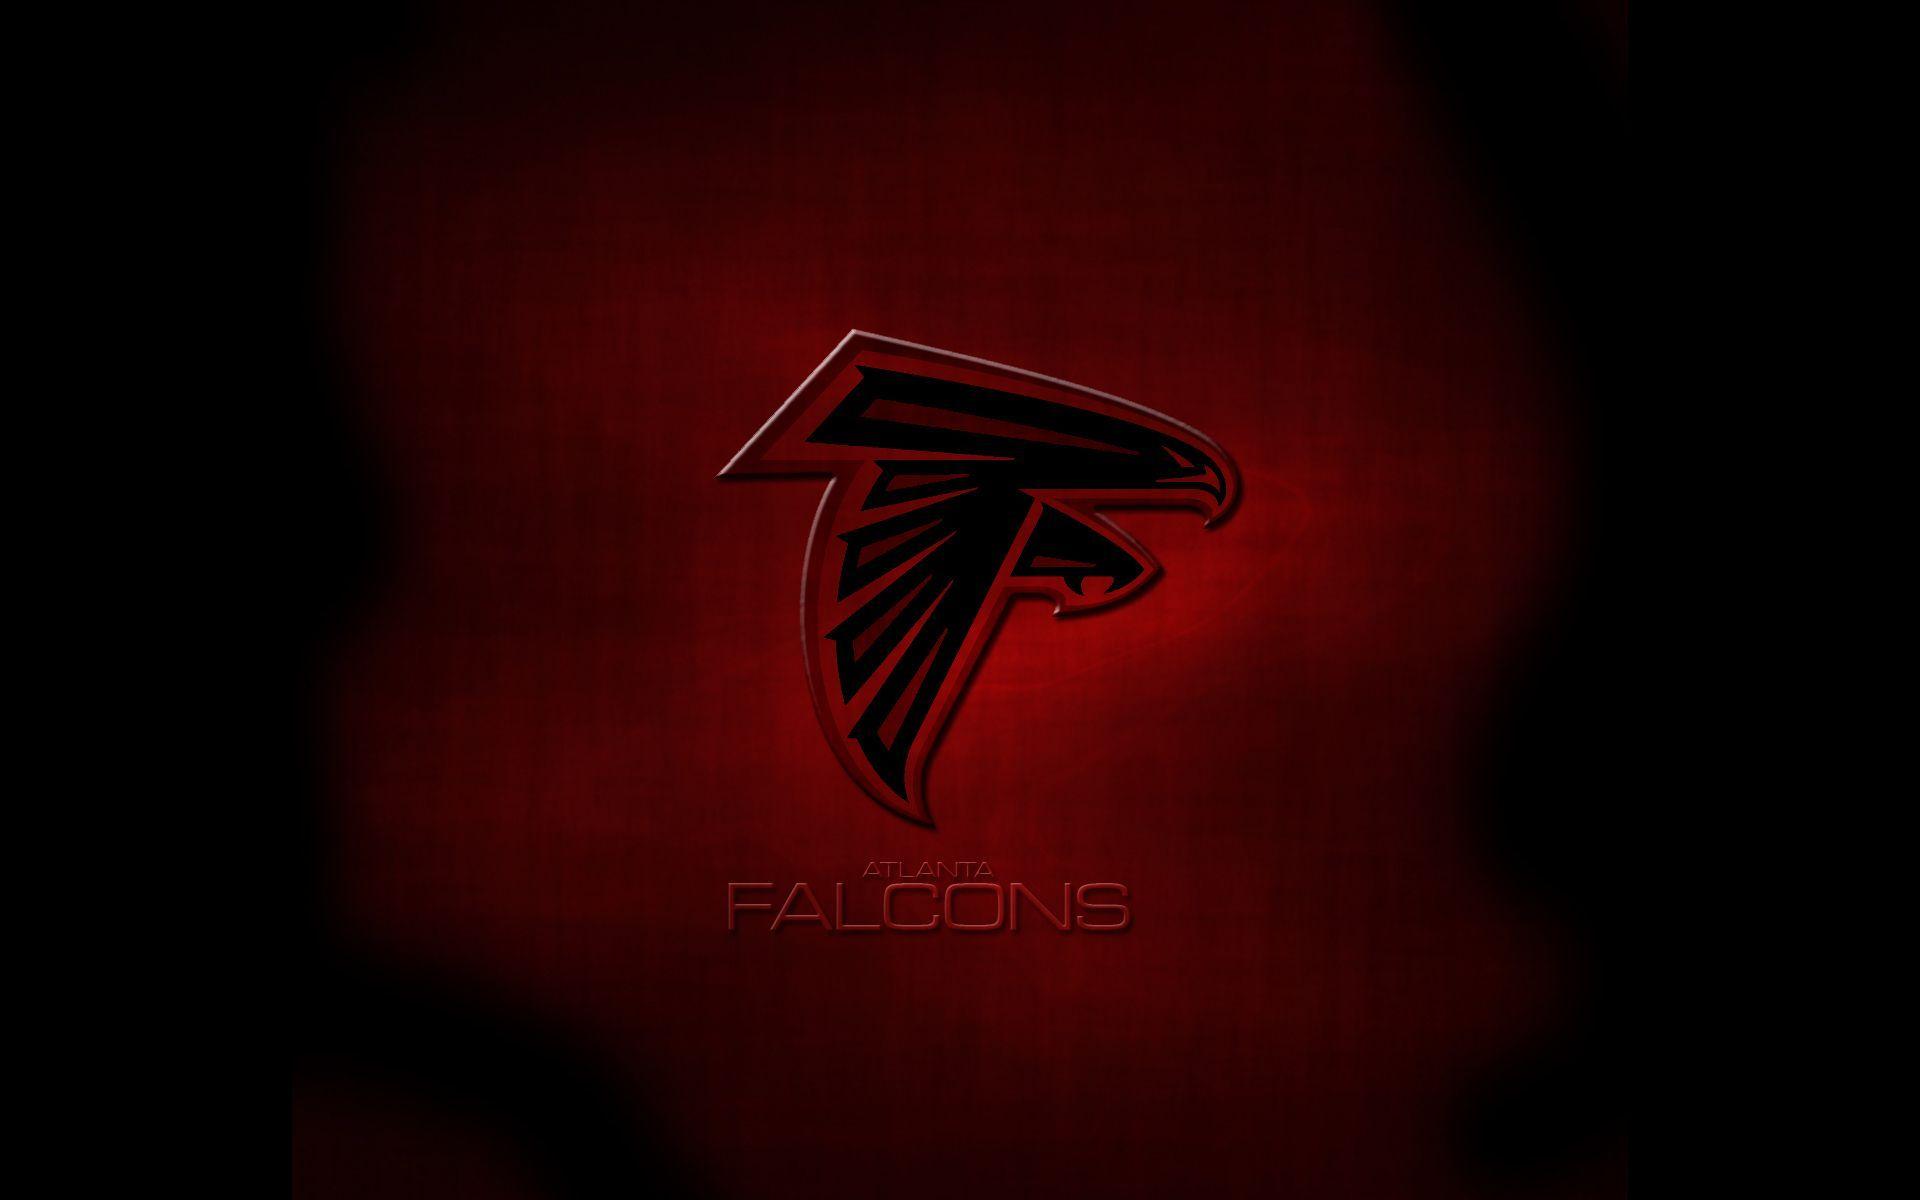 Atlanta Falcons Dark Red Wallpaper 25902 Hi Resolution. Best Free JPG